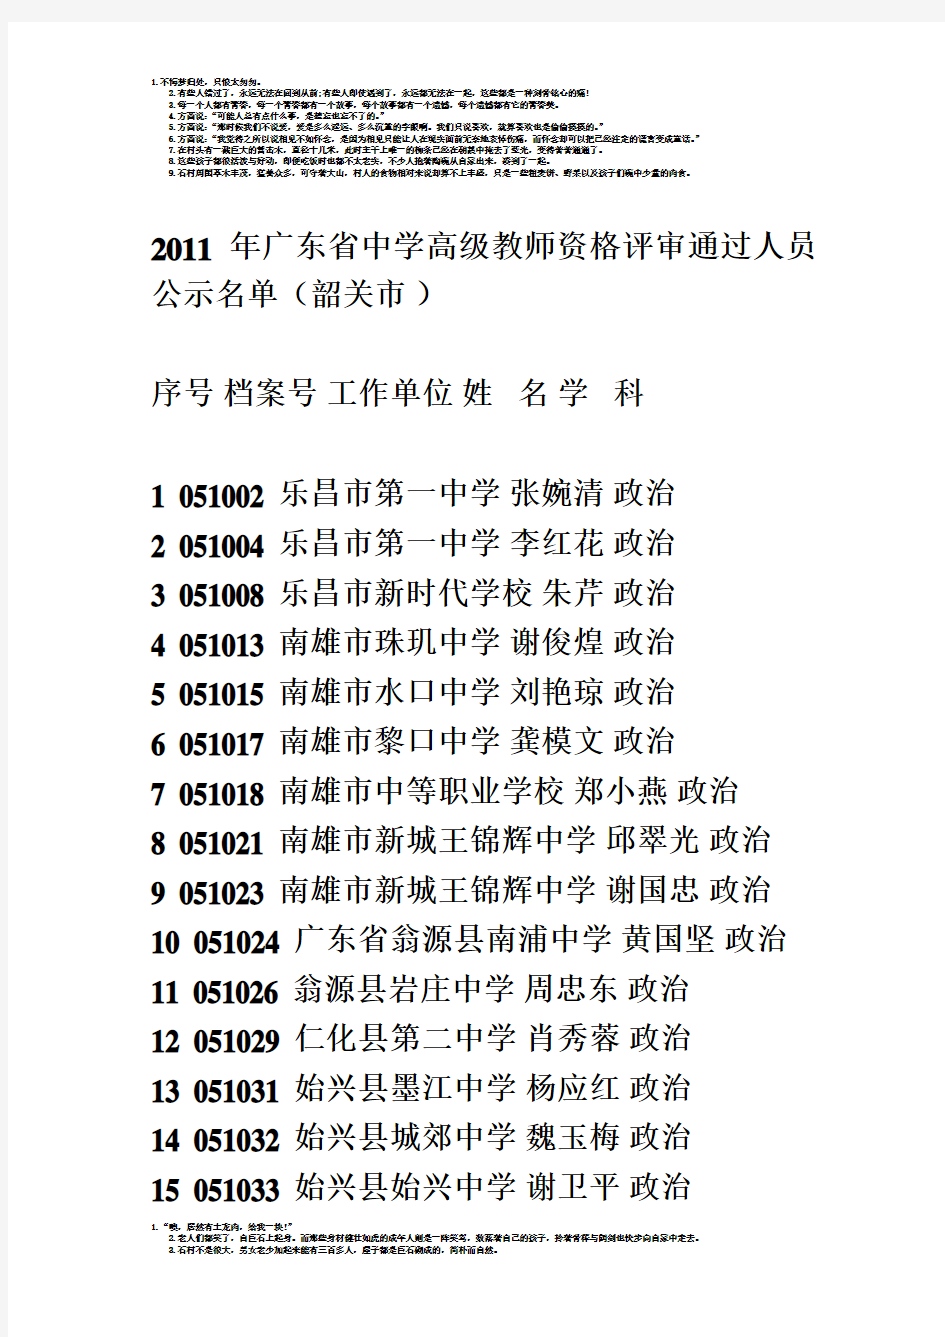 2011年广东省中学高级教师资格评审通过人员公示名单(韶关市-)